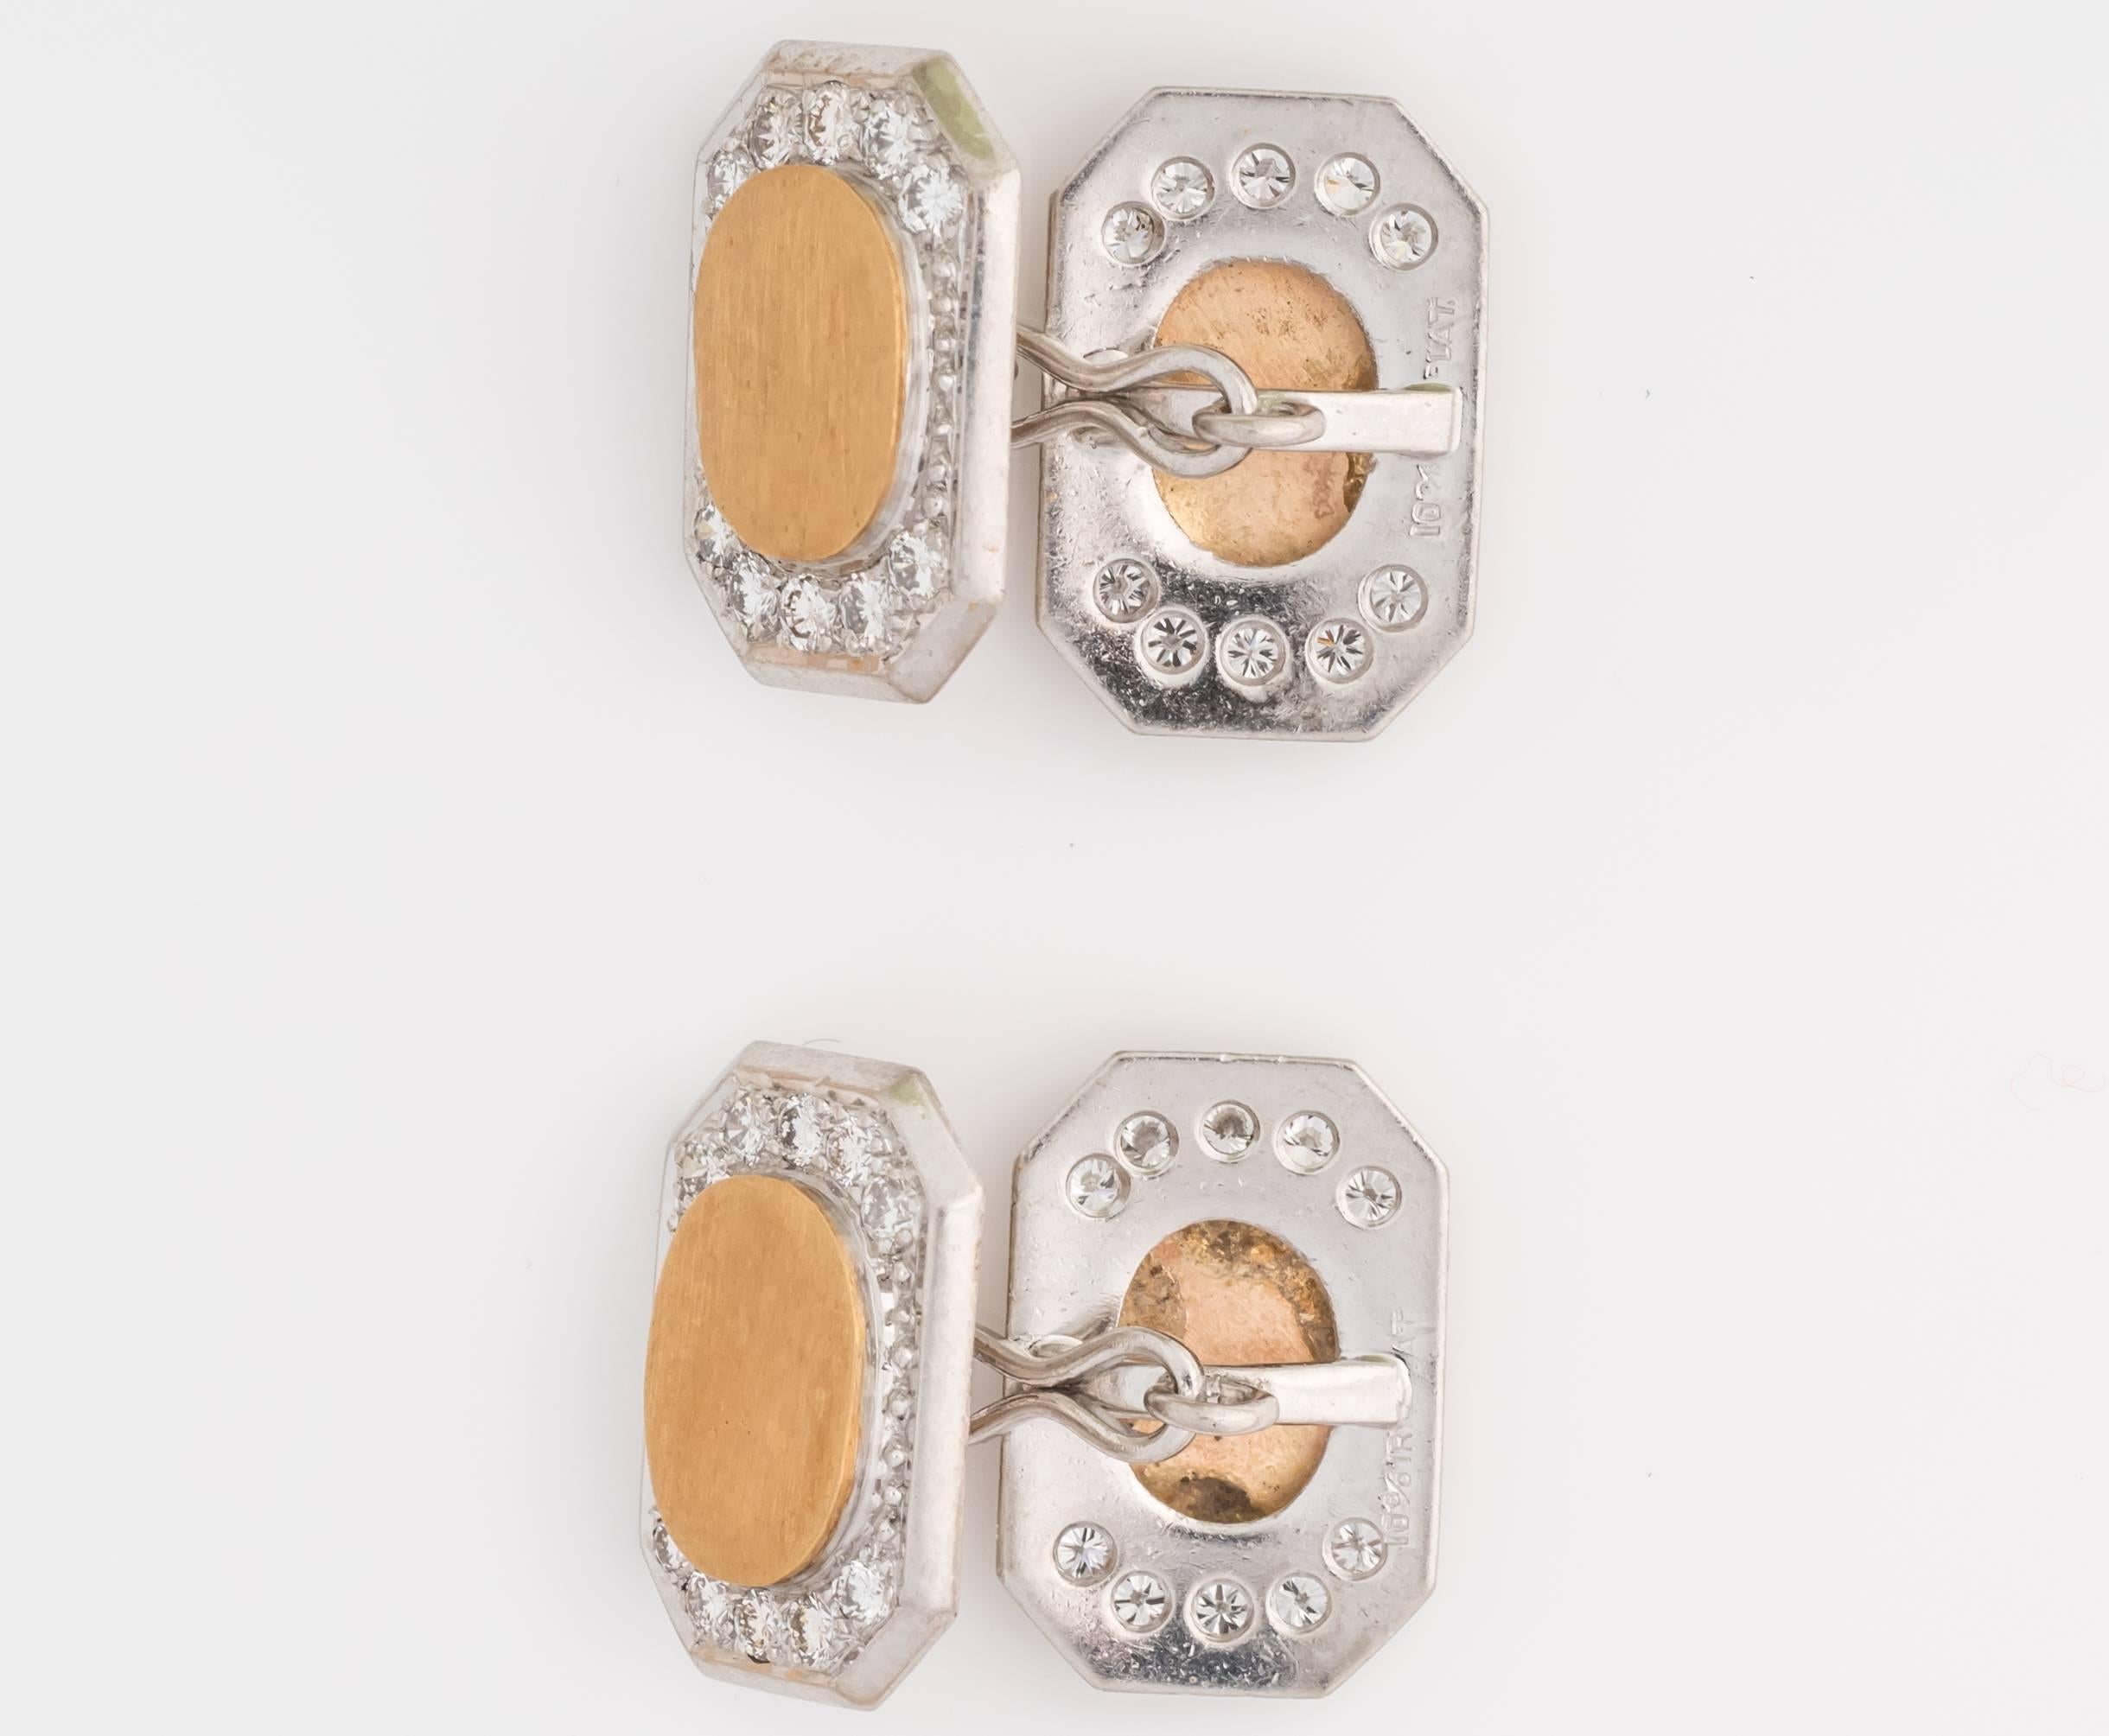 Einzigartiges Paar Manschettenknöpfe mit Diamanten, gefertigt aus 18 Karat Gelbgold und Platin. Es handelt sich um Manschettenknöpfe aus den 1950er Jahren. Alle Diamanten haben die Farbe F und die Reinheit VVS. Das Gesamtkaratgewicht der Diamanten